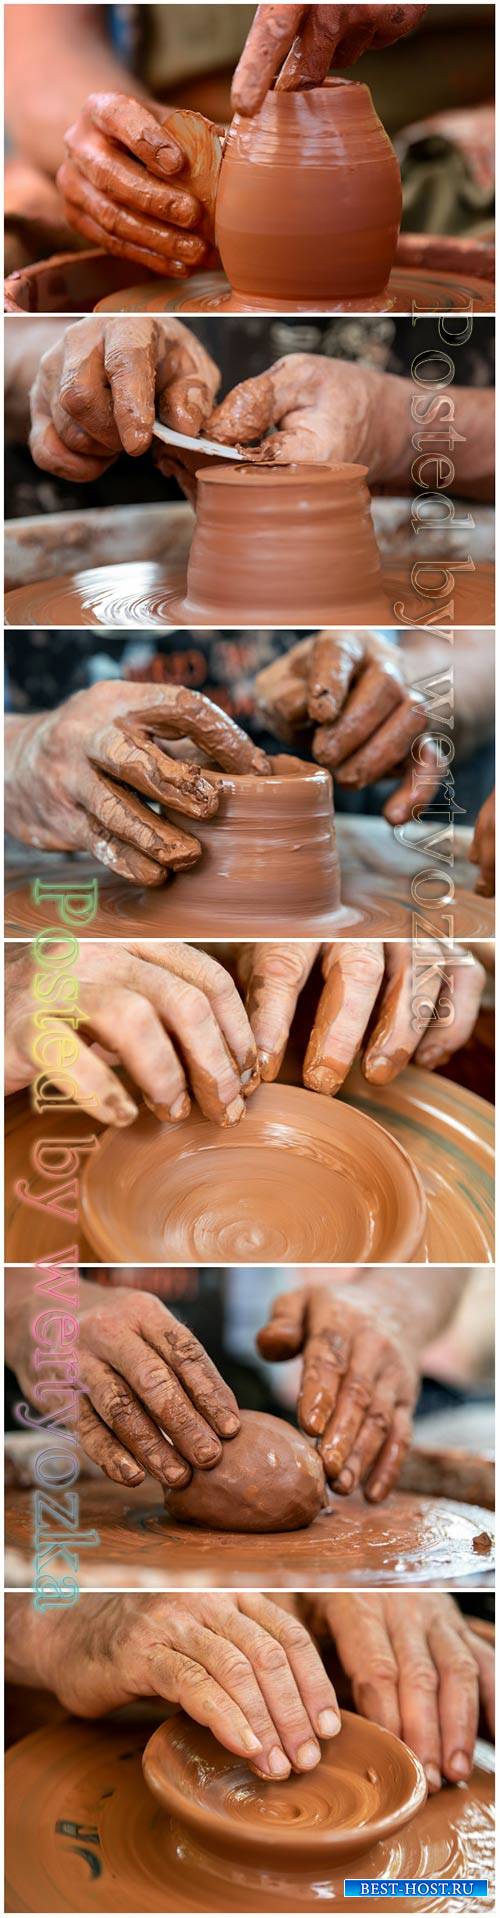 Beautiful pottery art stock photo